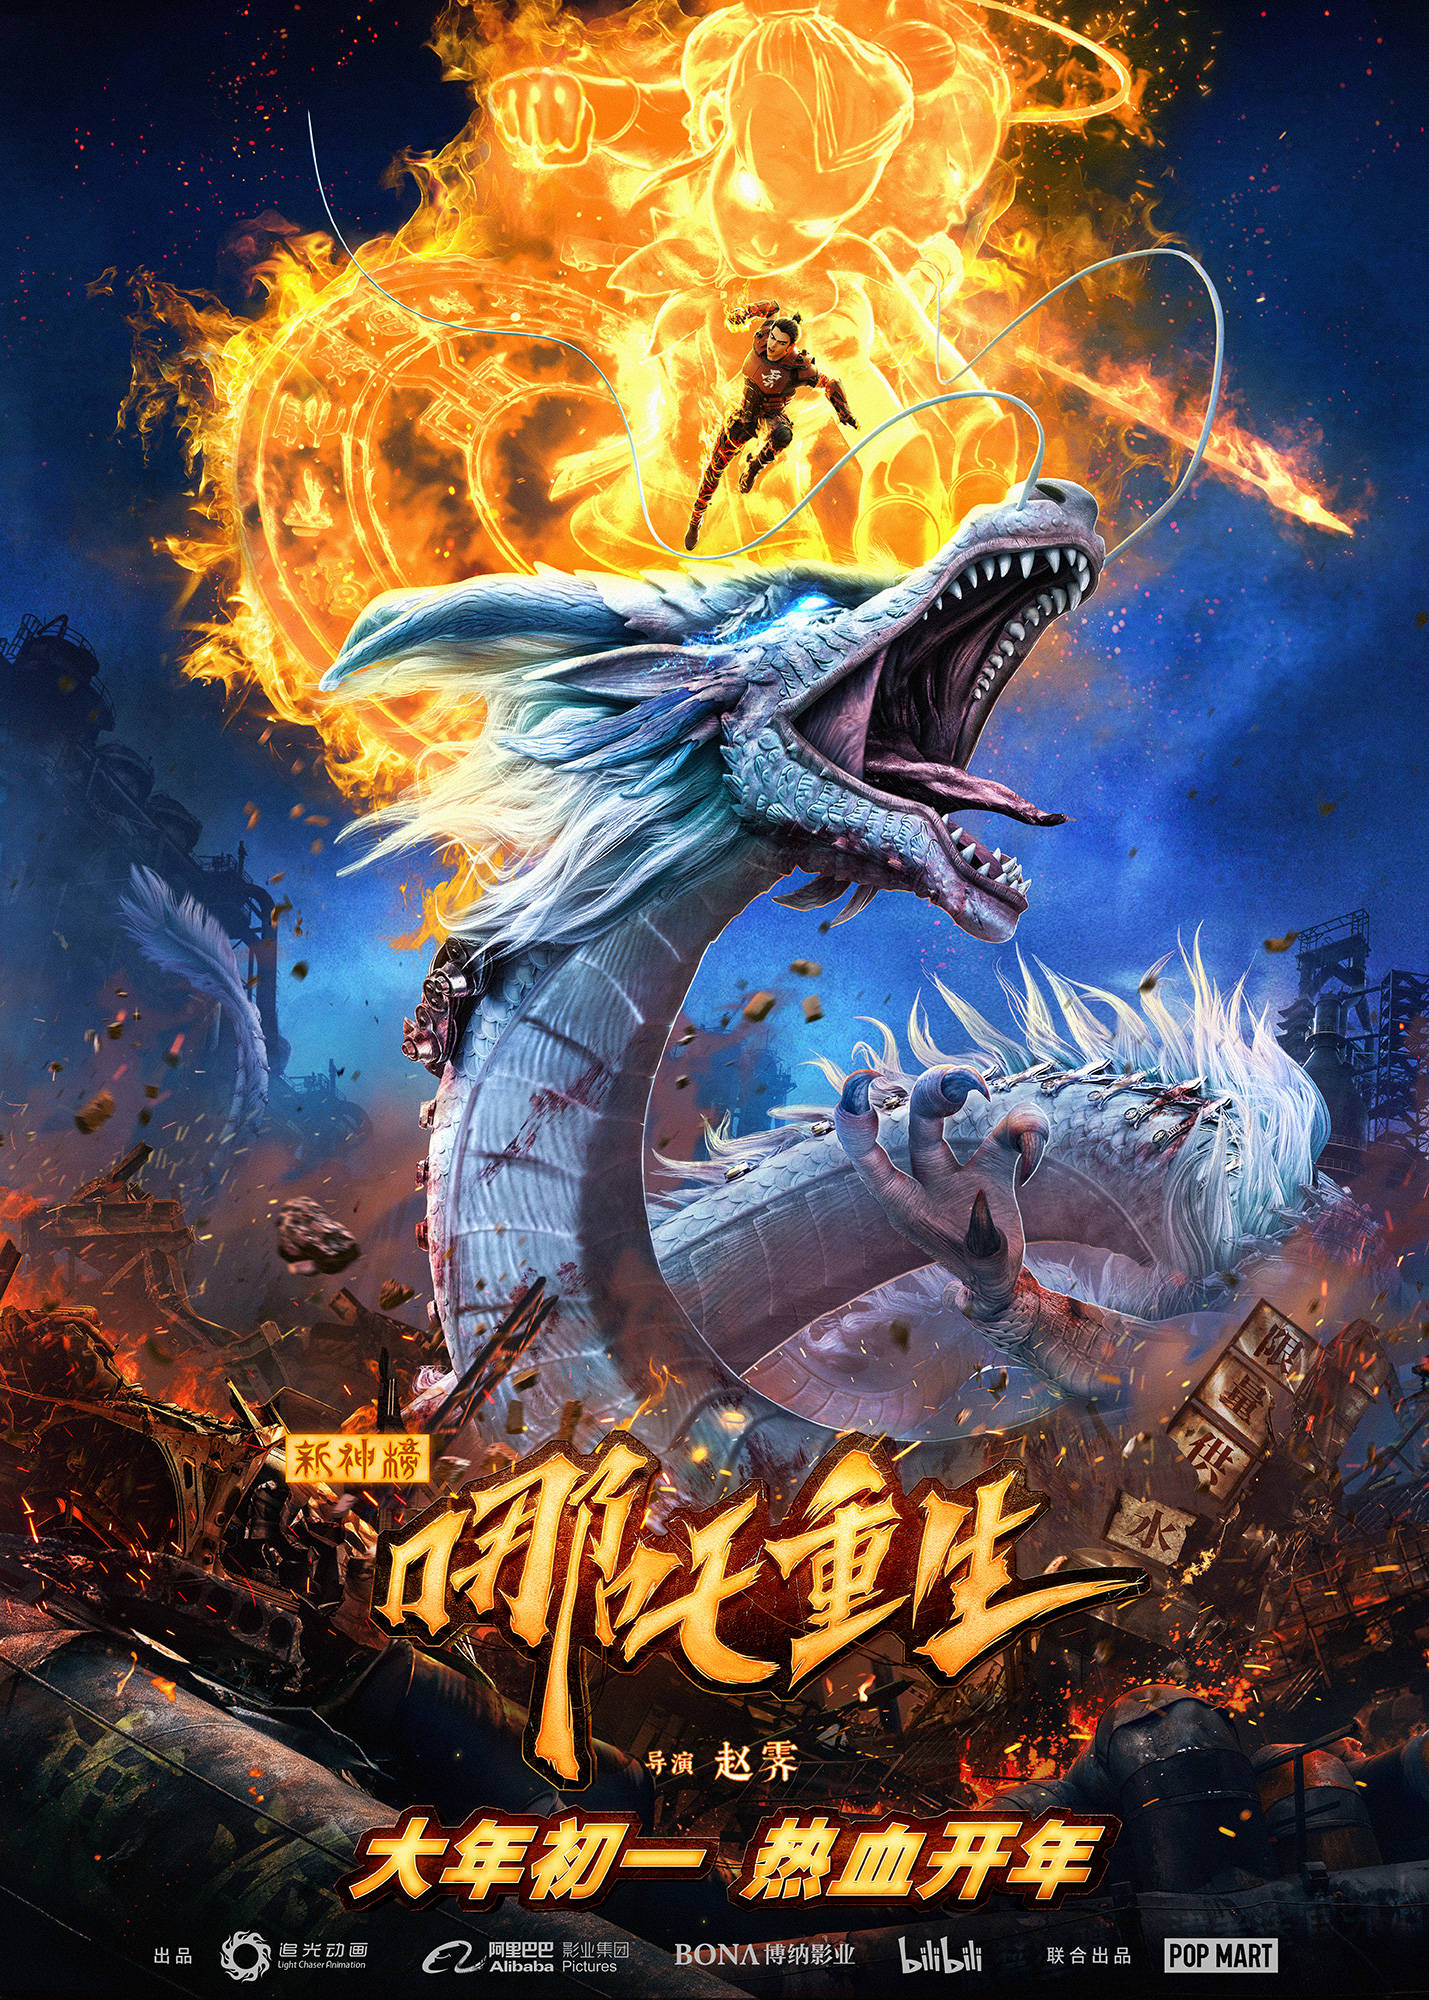 搜狐娱乐讯 国产动画电影《新神榜:哪吒重生》正式宣布定档2021年大年